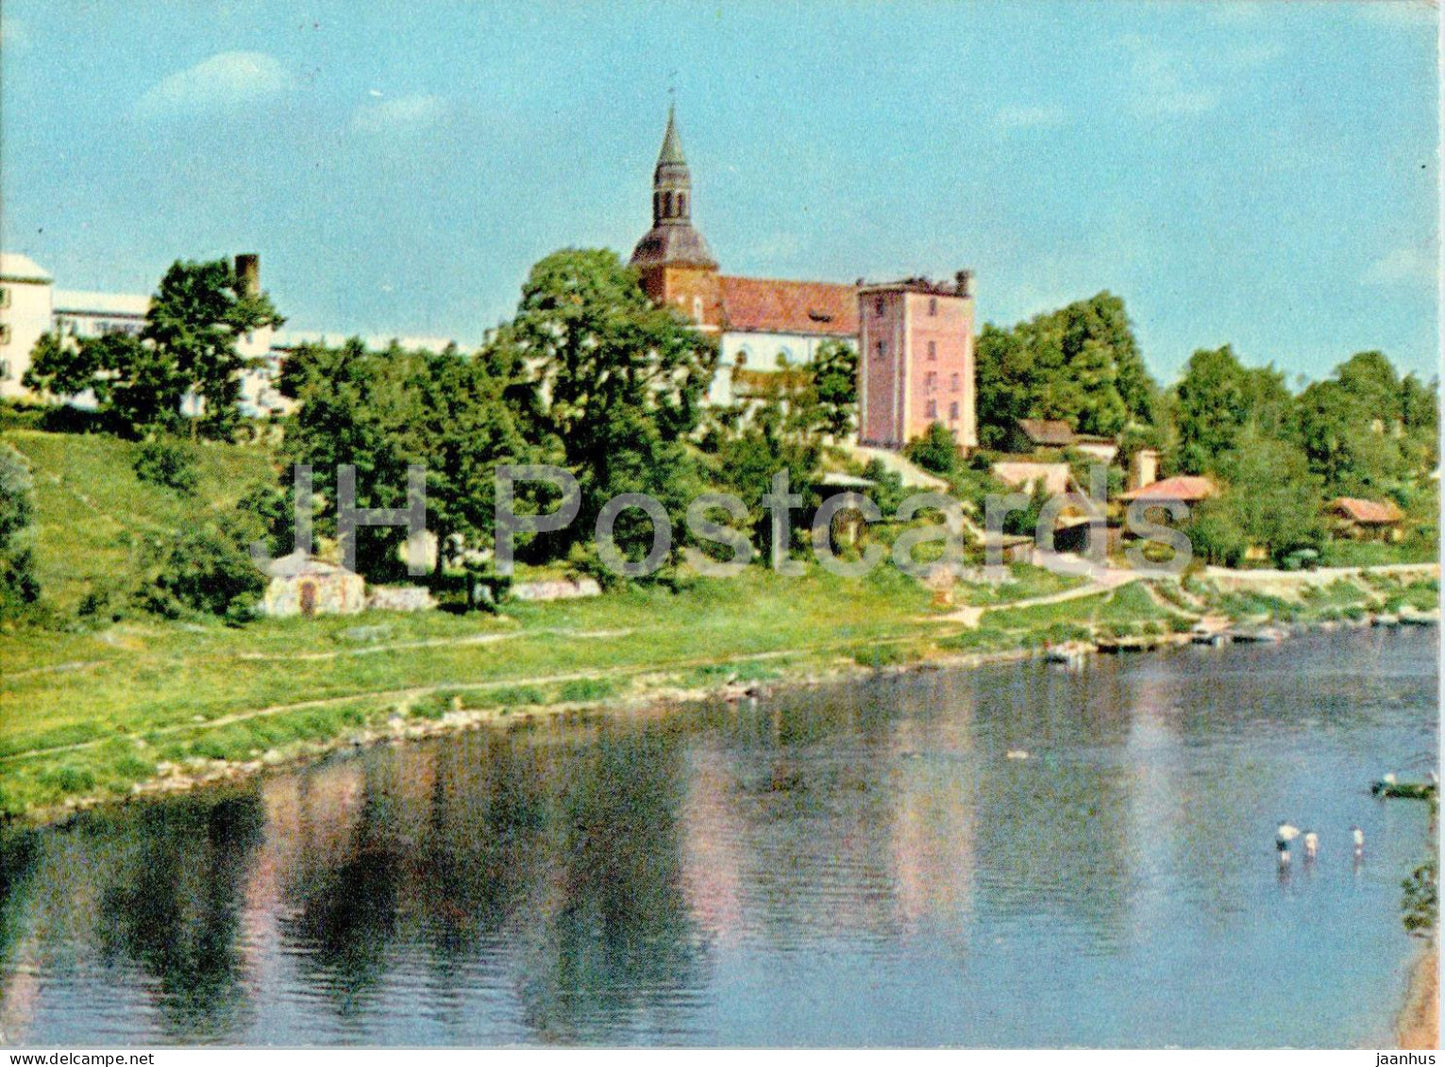 Valmiera - Latvia USSR - unused - JH Postcards